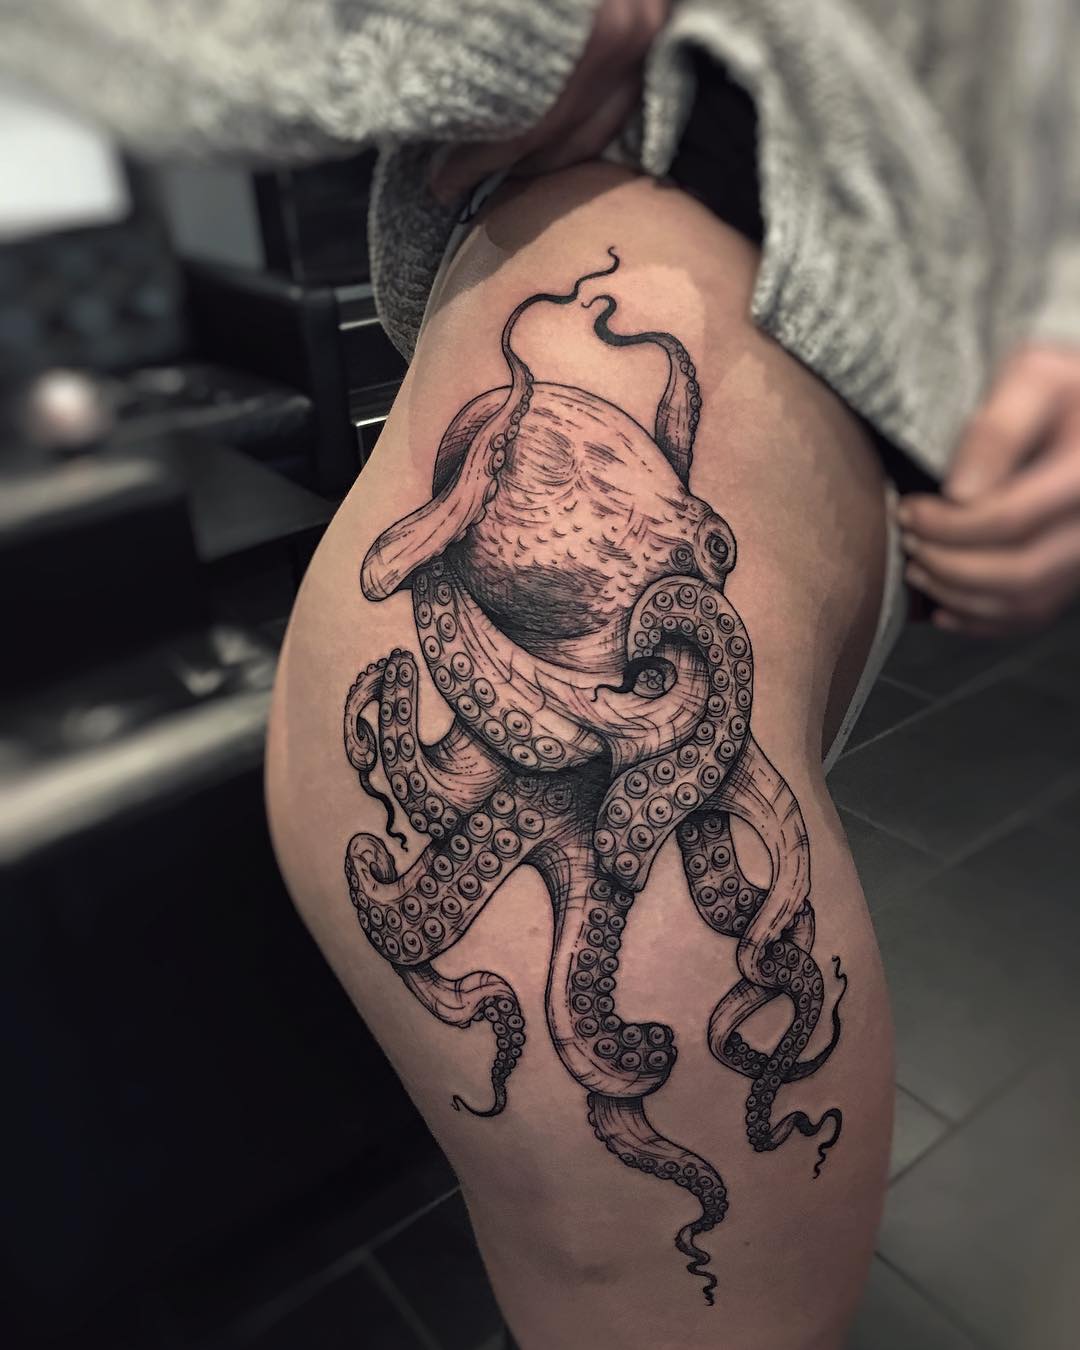 Fabulous Octopus Tattoo On Hip - Blurmark.